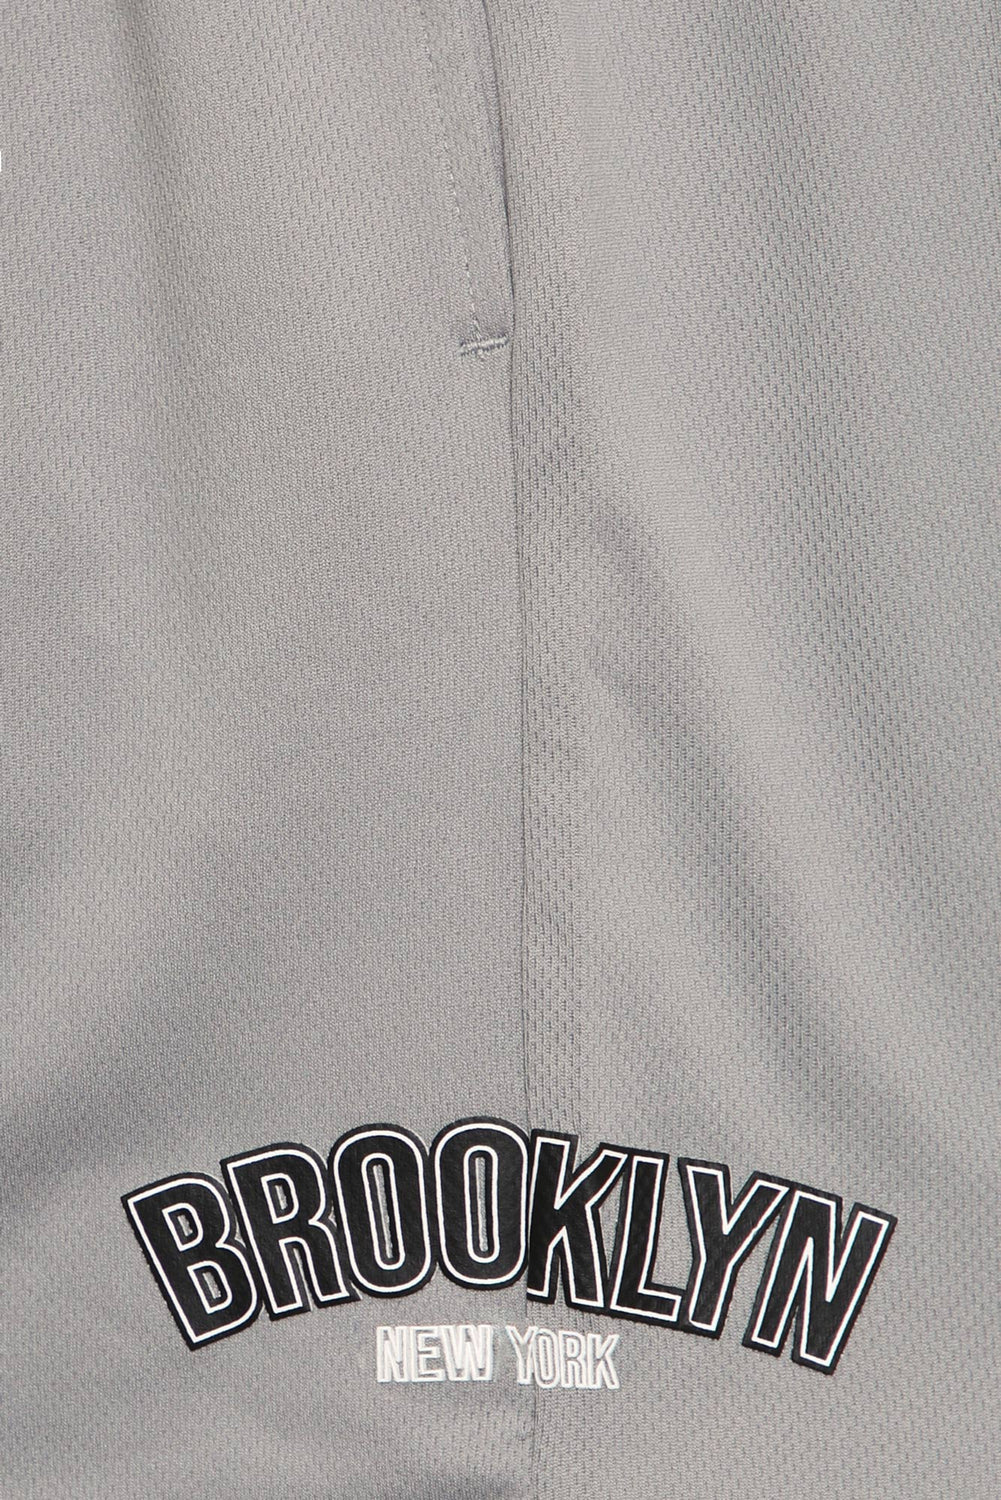 West49 Youth Brooklyn Mesh Shorts West49 Youth Brooklyn Mesh Shorts